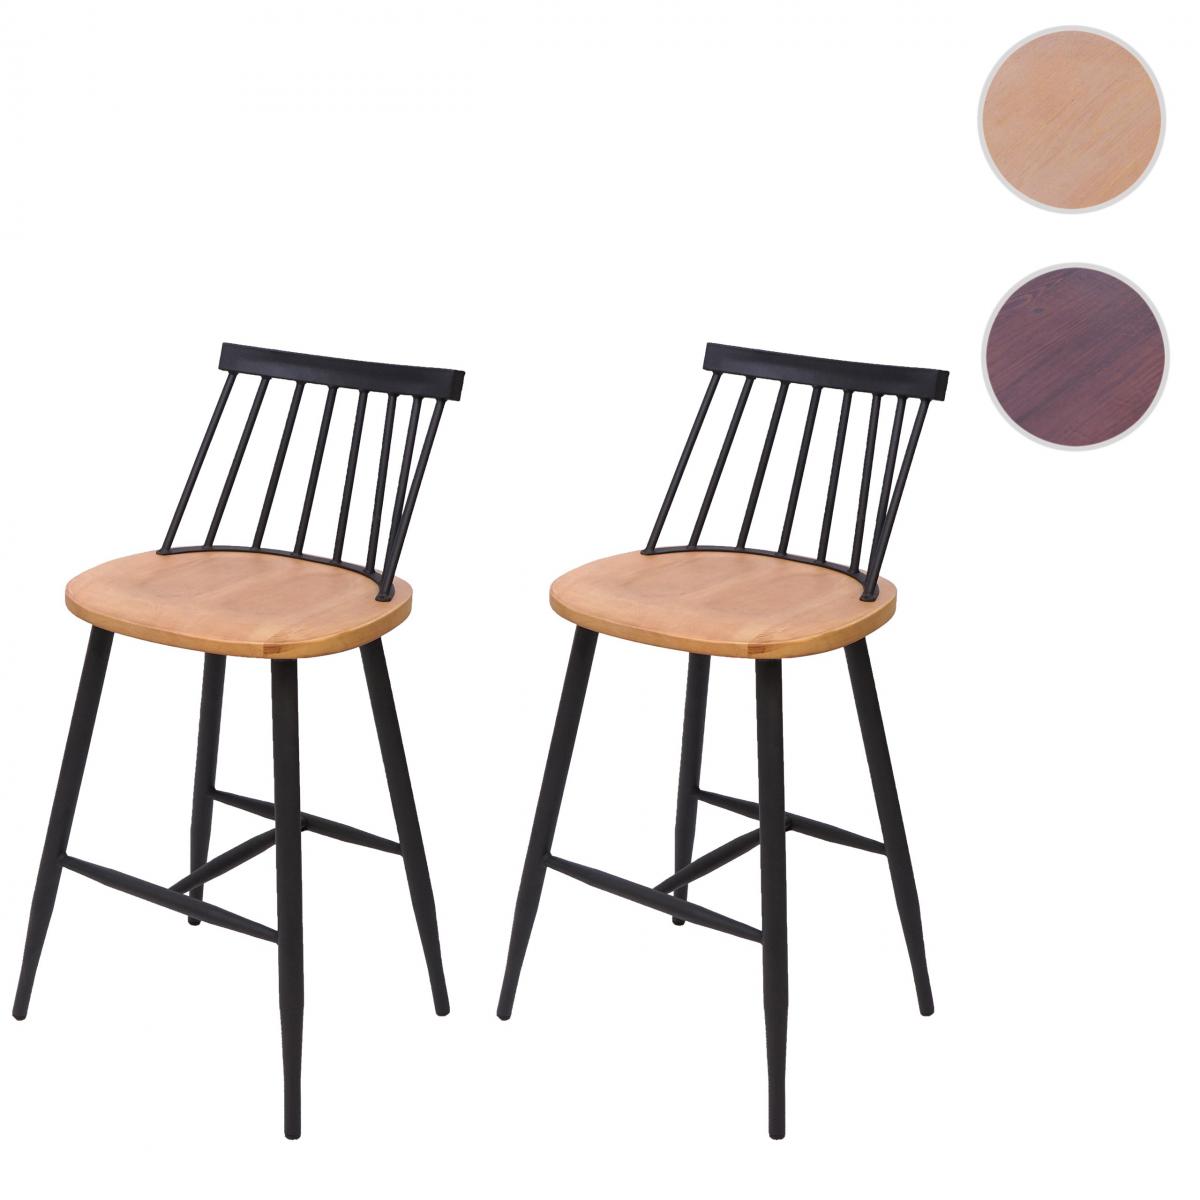 Mendler - 2x tabouret de bar HWC-G69, chaise bar, bois massif, style rétro,métal, avec repose-pied, gastronomie ~ nature - Tabourets